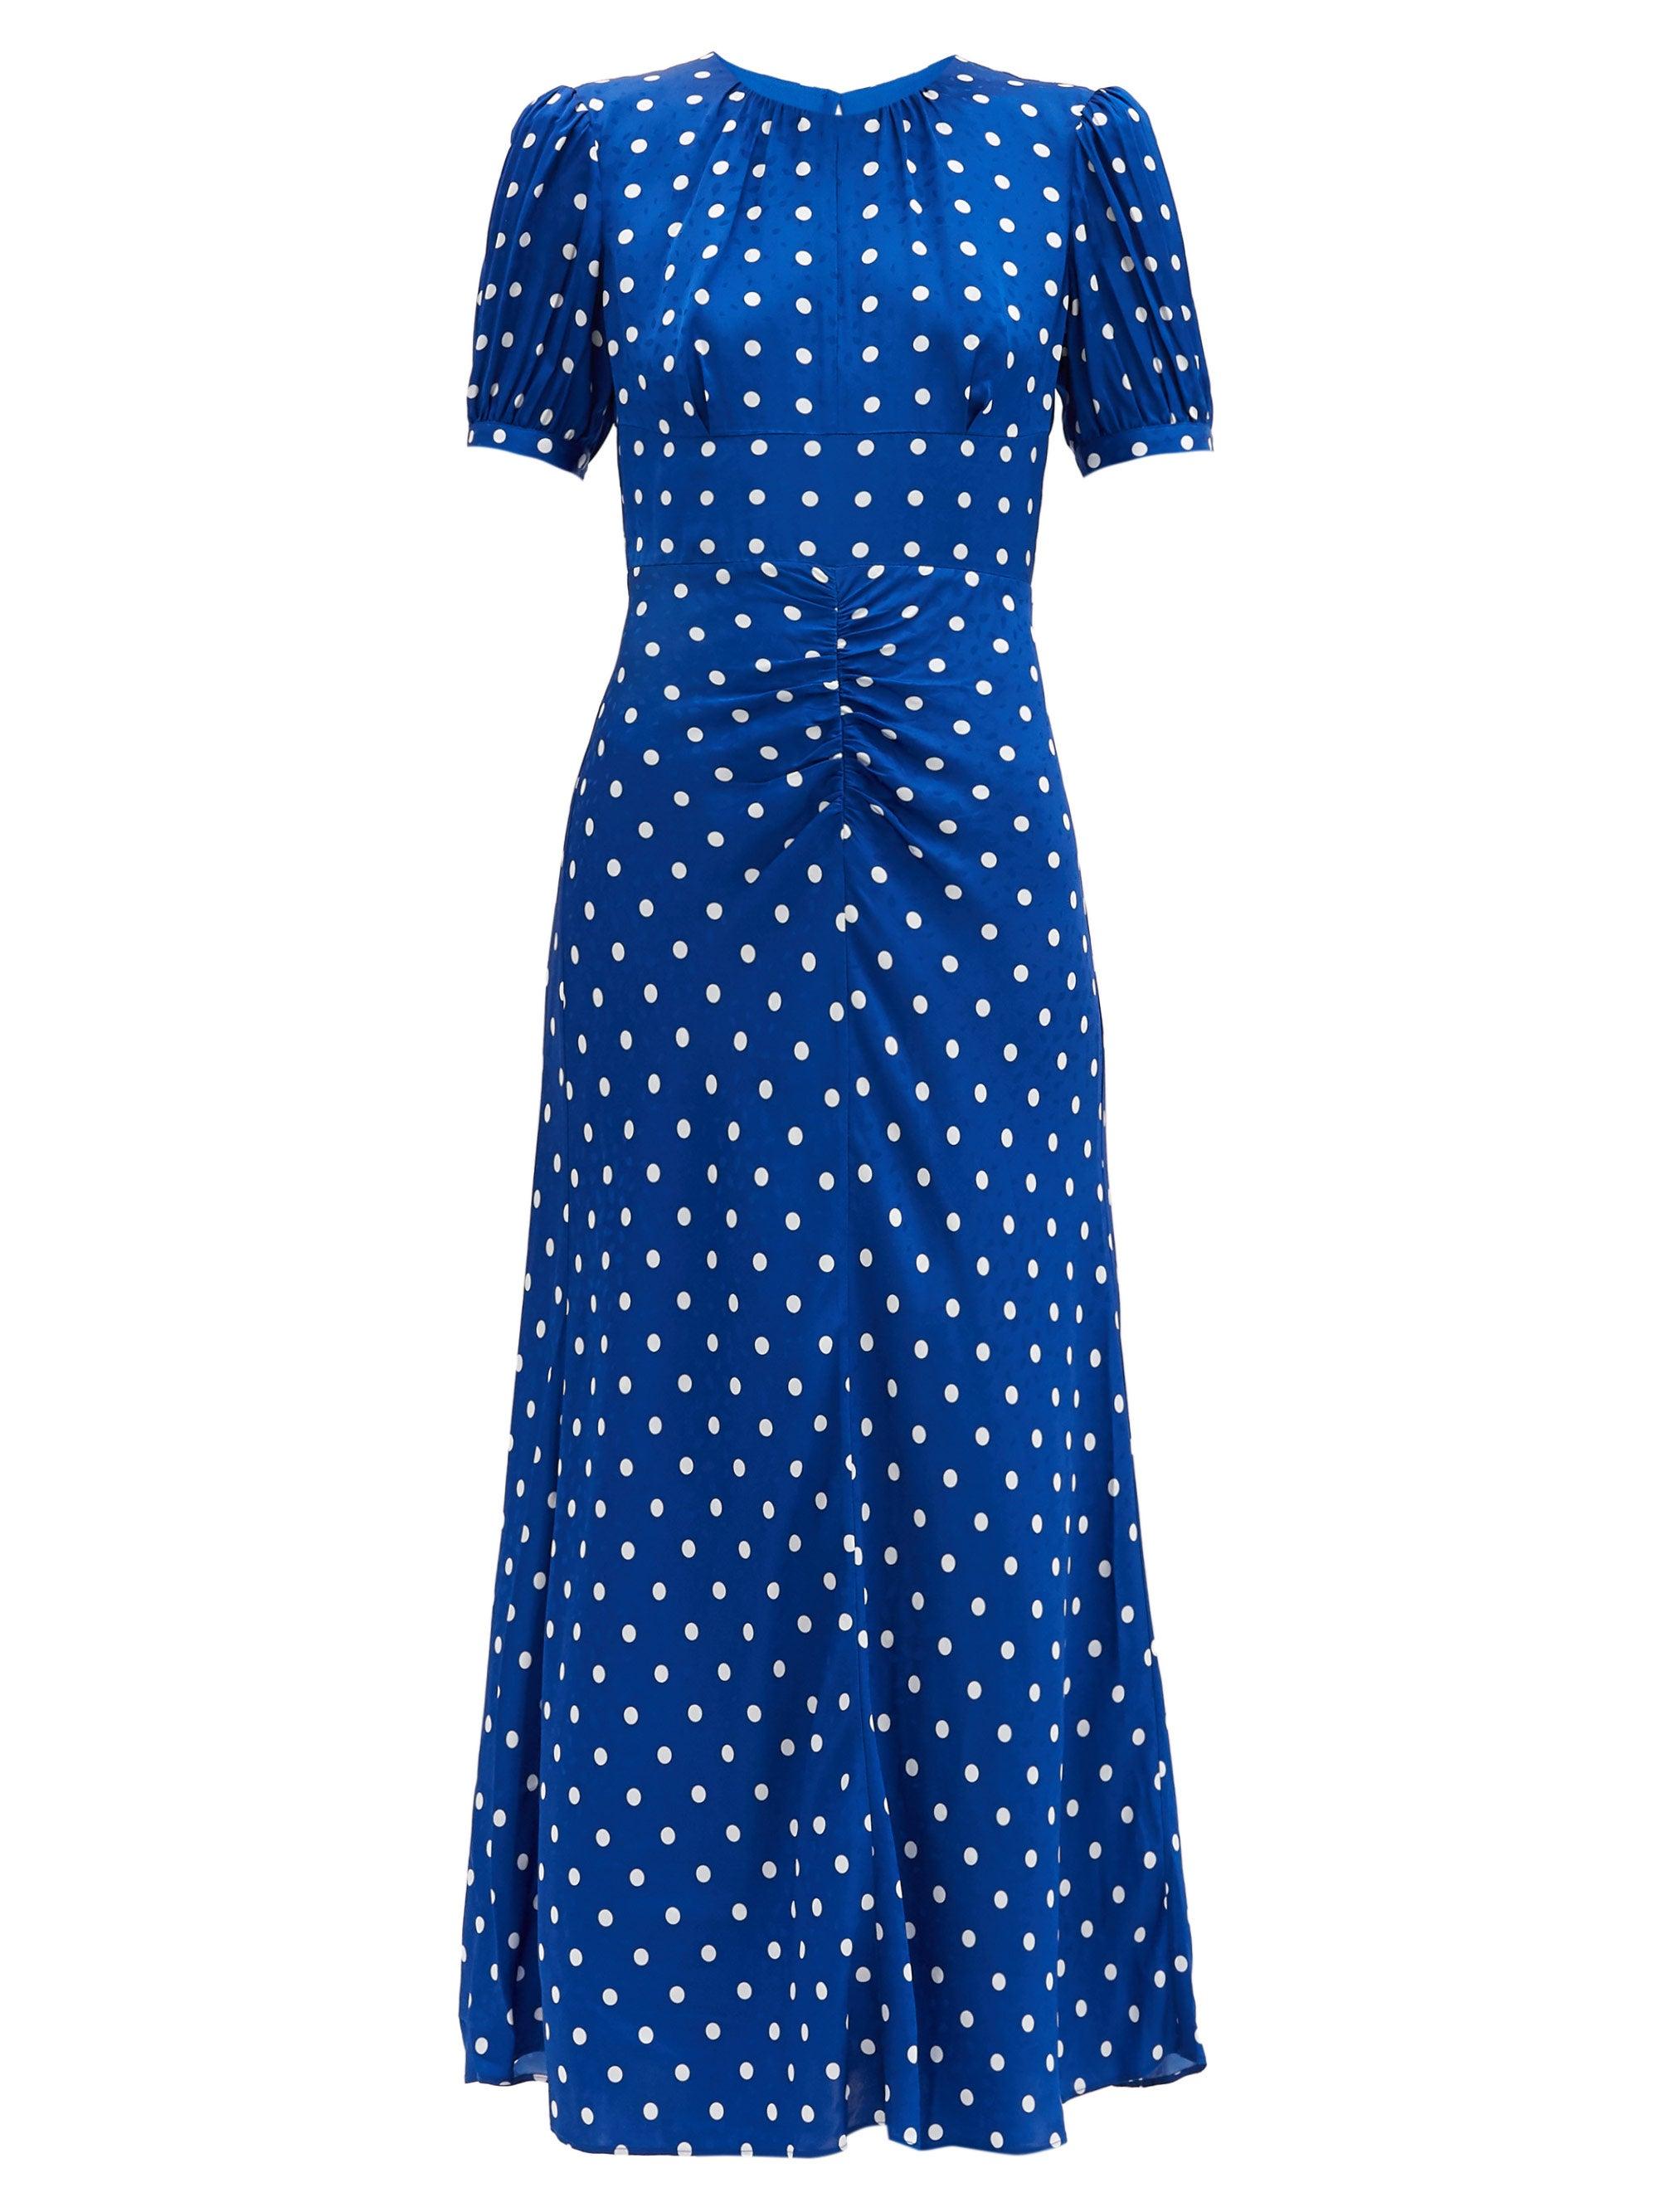 Self-Portrait Polka-dot Satin Midi Dress in Blue - Lyst